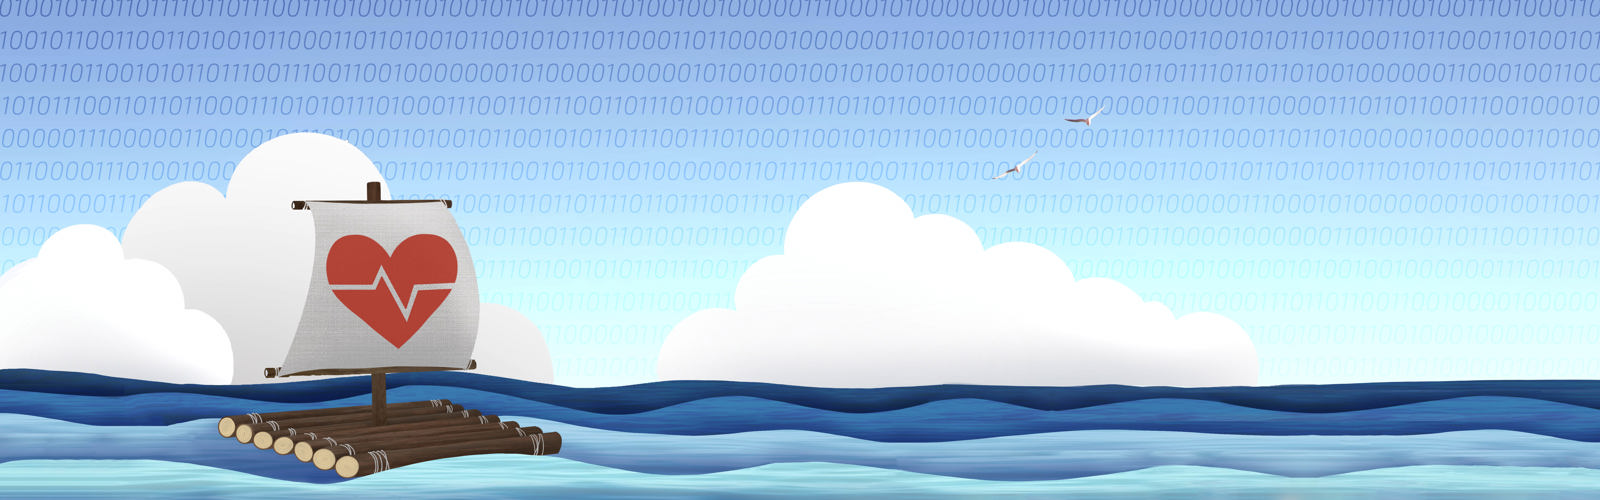 Illustration av en flotte på hav och en himmel  mönstrad med binär kod